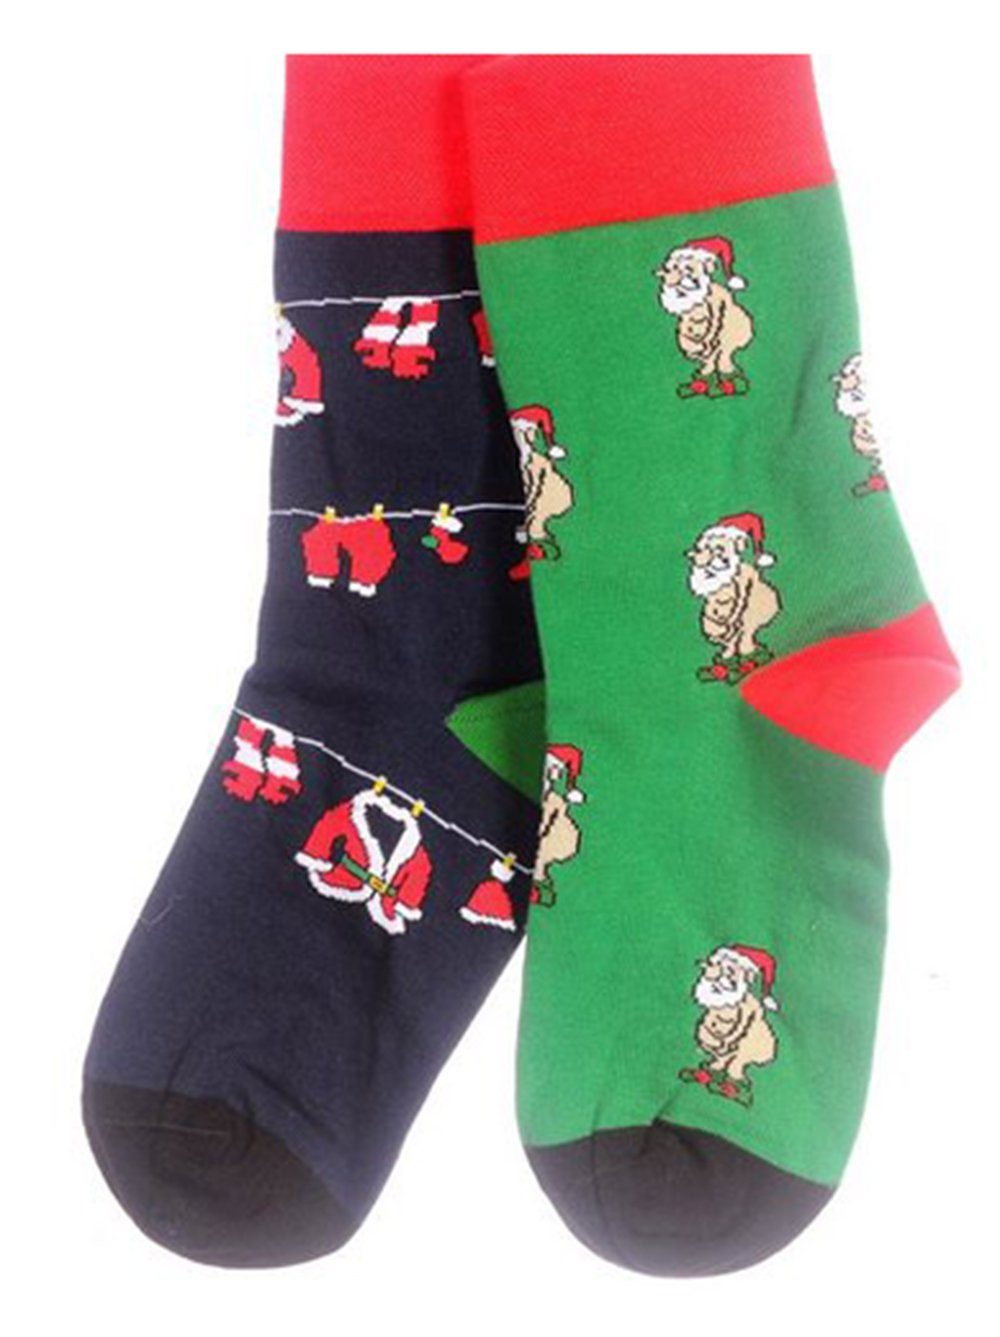 35 Grün_Santa_Ohne 42 schön, Martinex 46 43 38 bunt, weihnachtlich Socken 1 Socken Paar 39 Strümpfe Weihnachtssocken